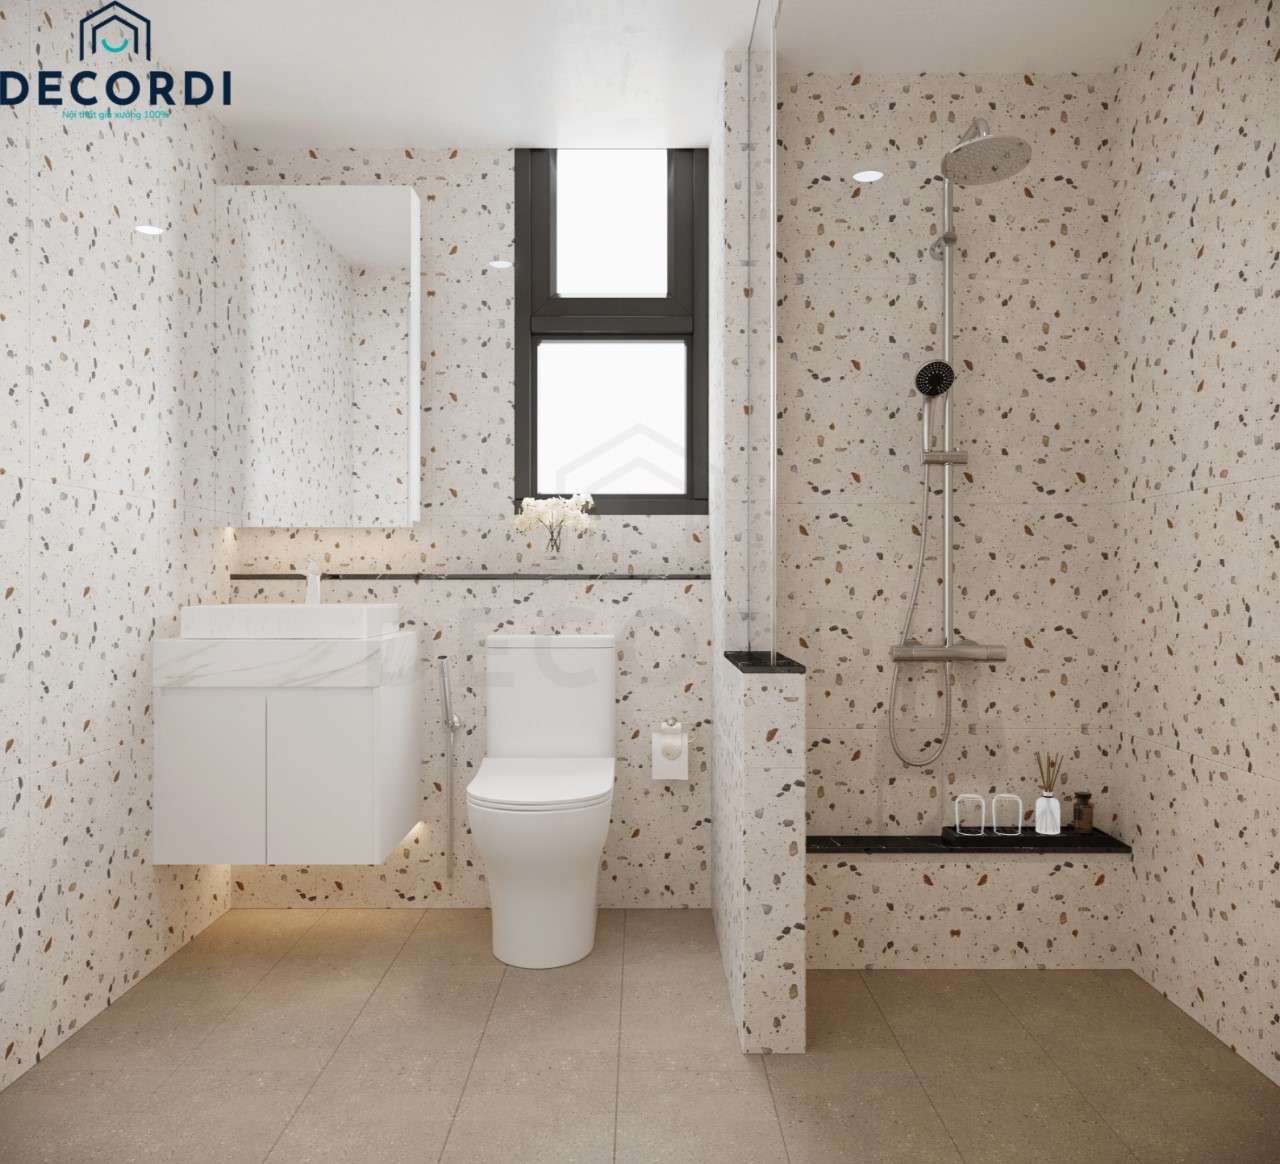 Phòng tắm hiện đại được ốp gạch toàn bộ ngăn cách bởi vách kính cho khu vực vệ sinh sạch sẽ